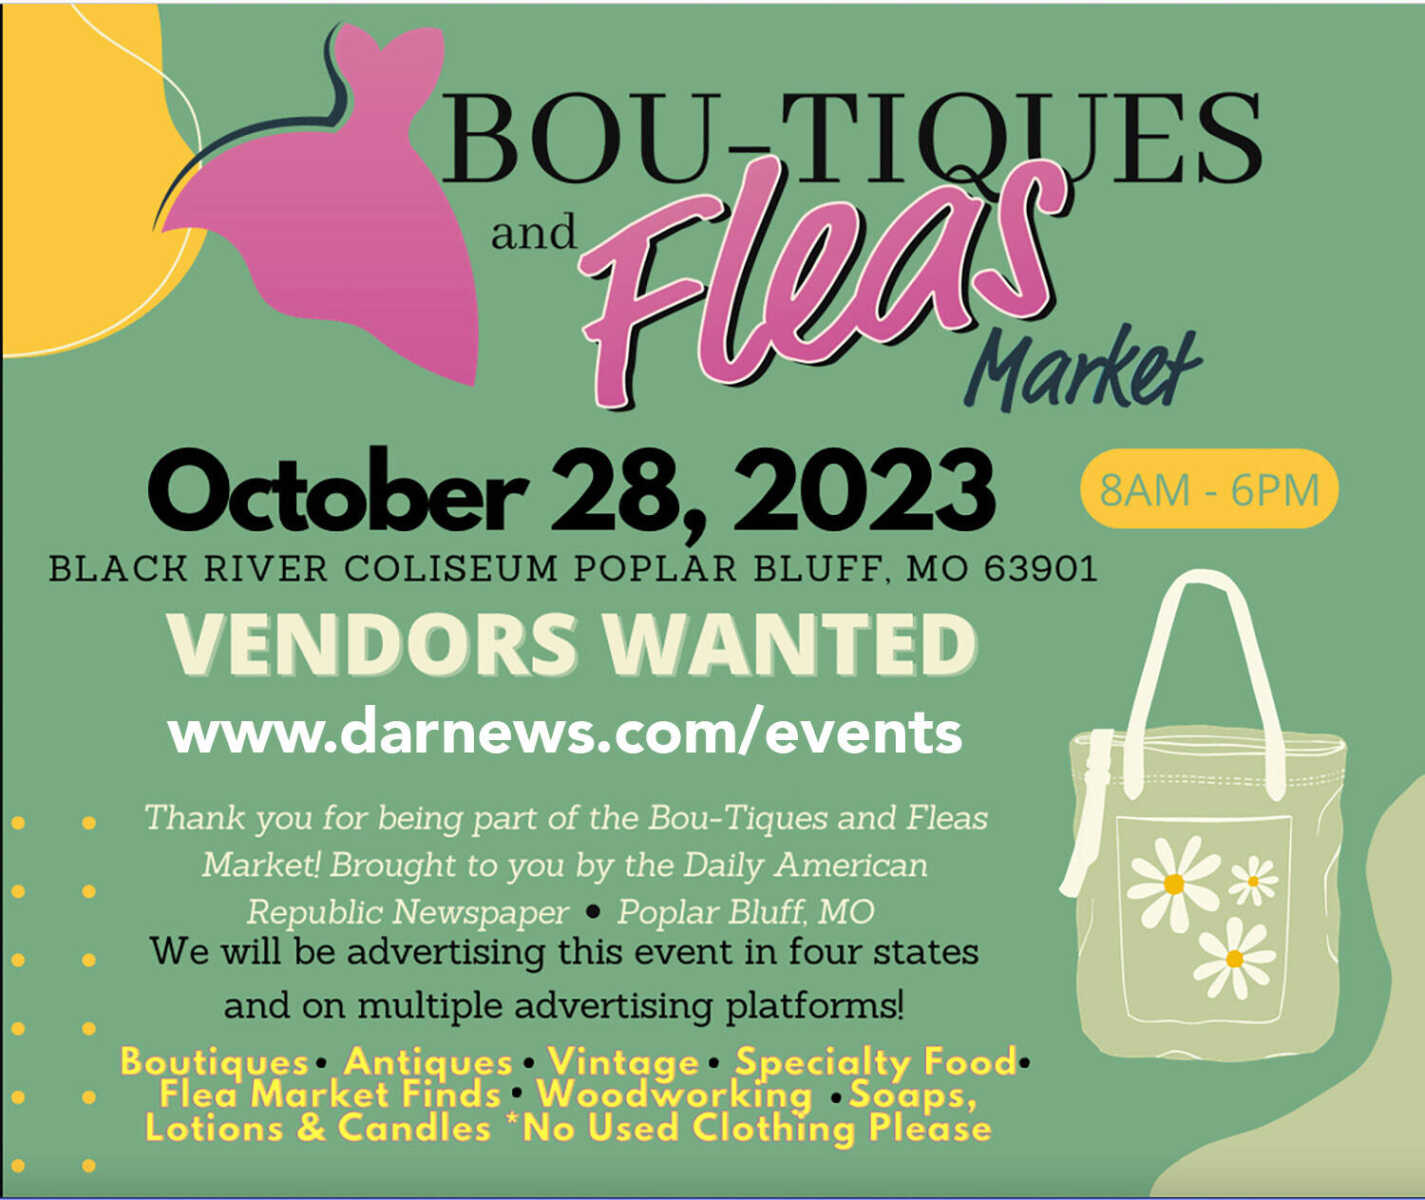 2023 Bou-tiques & Fleas Market